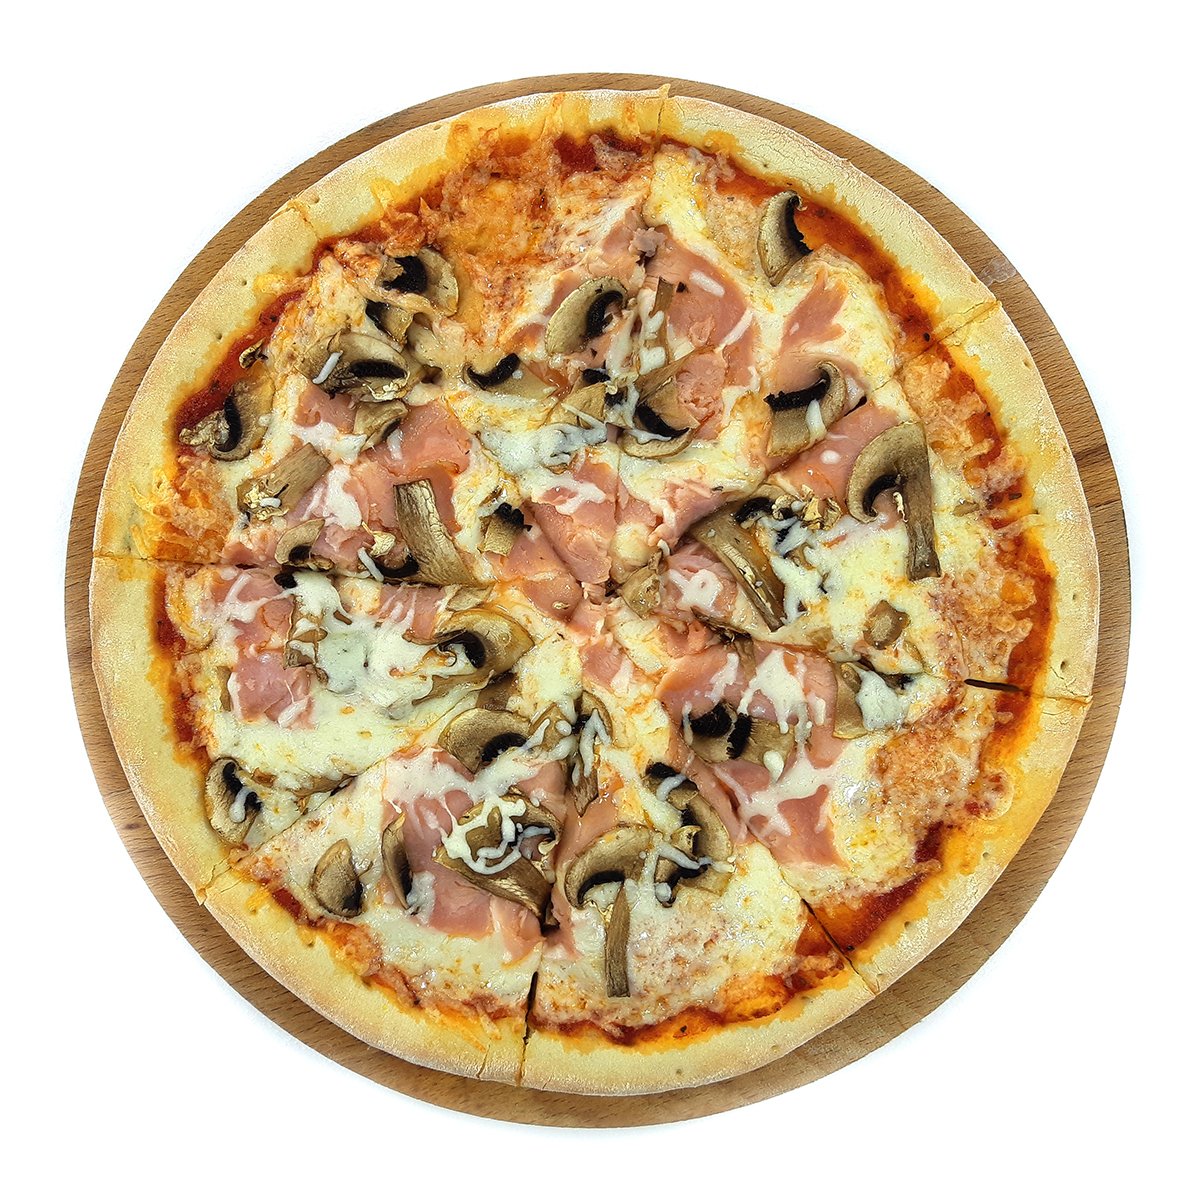 цезарь пицца с ветчиной и грибами замороженная фото 103